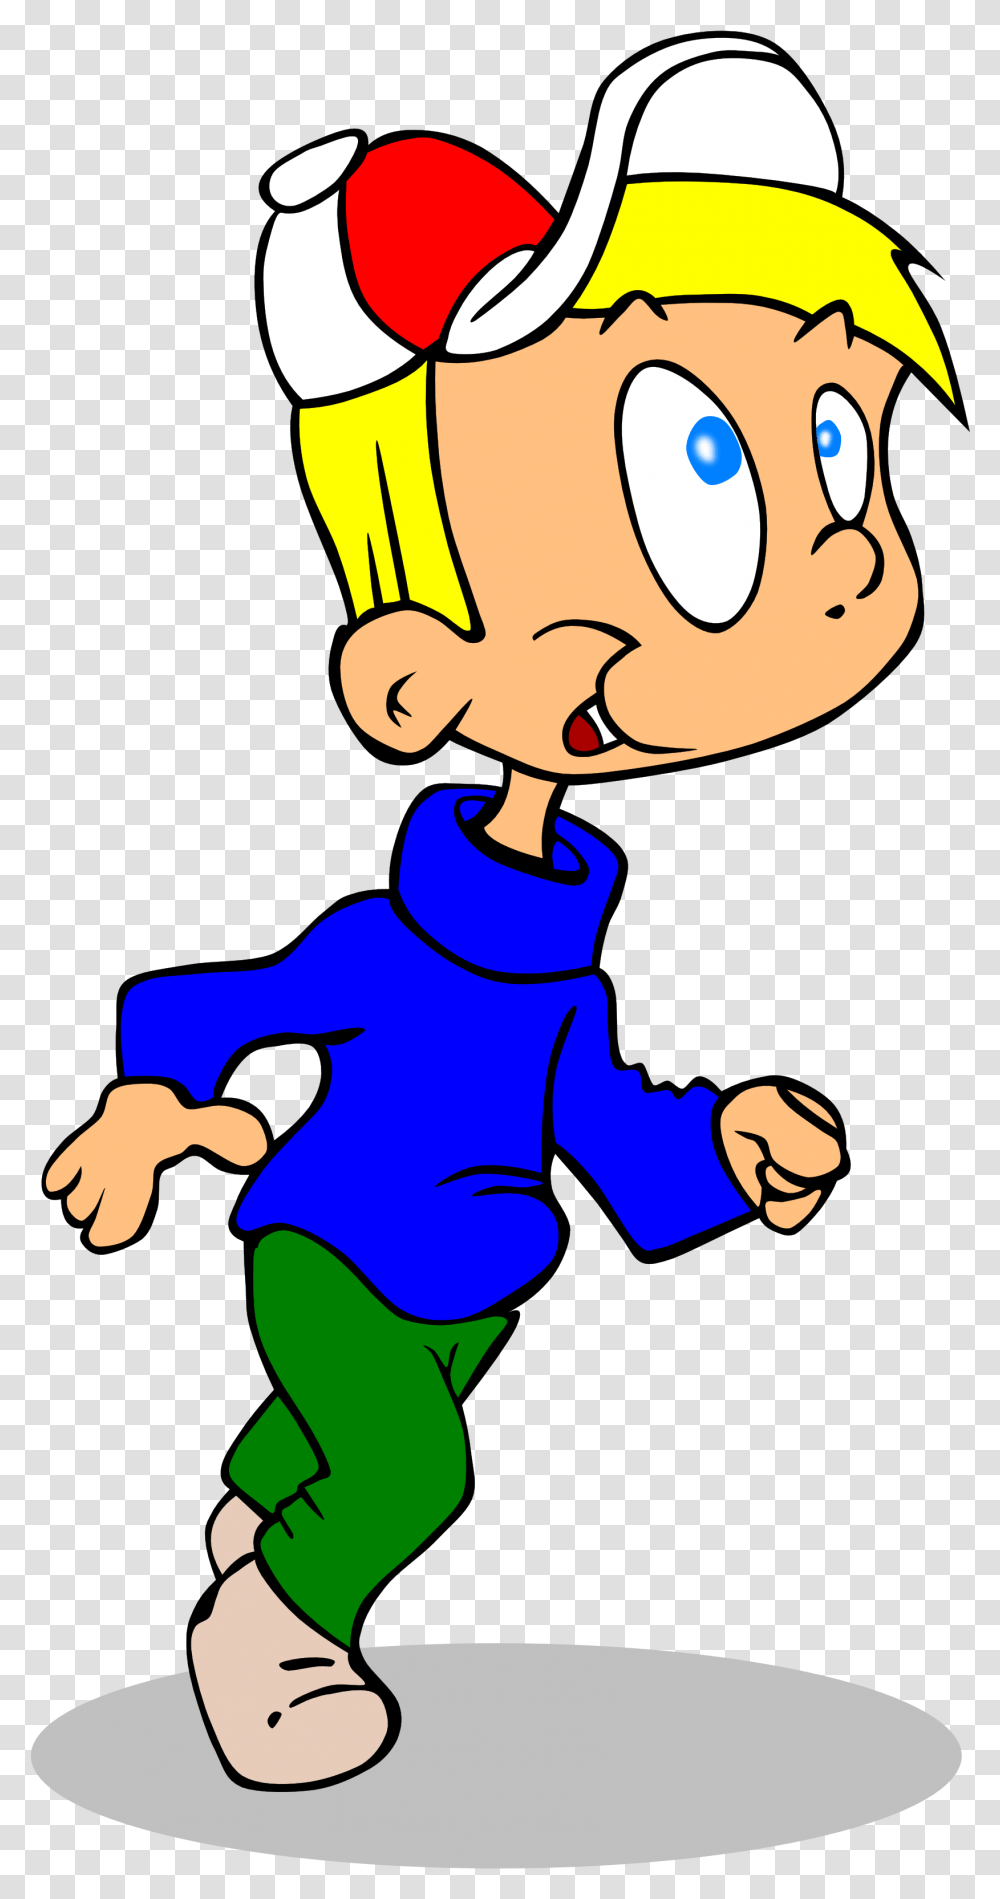 Clipart Child Runner Cartoon Boy Running, Person, Human, Face, Hand Transparent Png